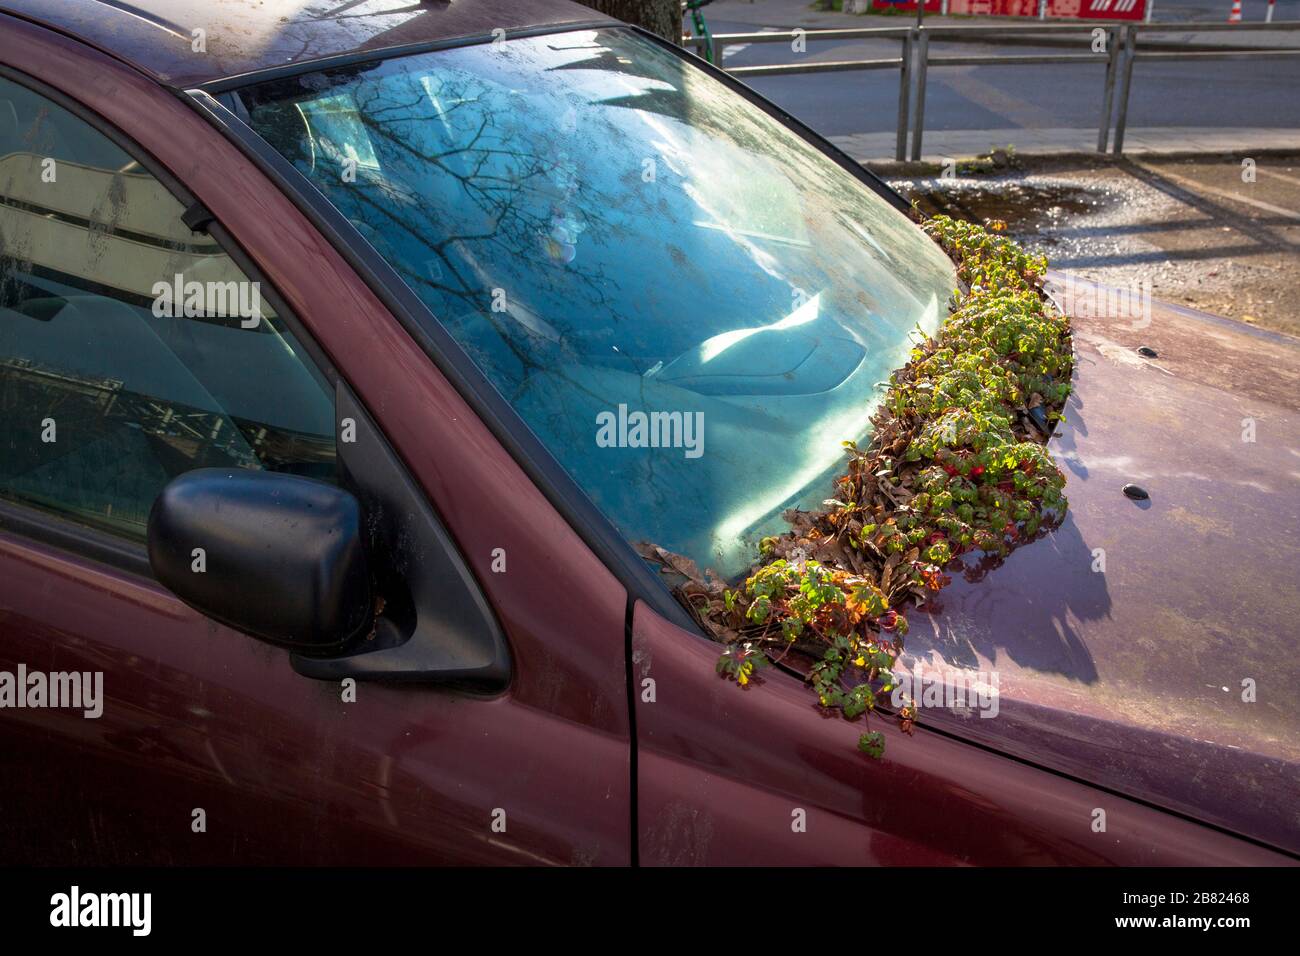 Pianta cresce sul parabrezza di una macchina illegalmente parcheggiata vicino alla strada Konrad-Adenauer-Ufer, Colonia, Germania. Pflanze waechst an der Windschutzsch Foto Stock